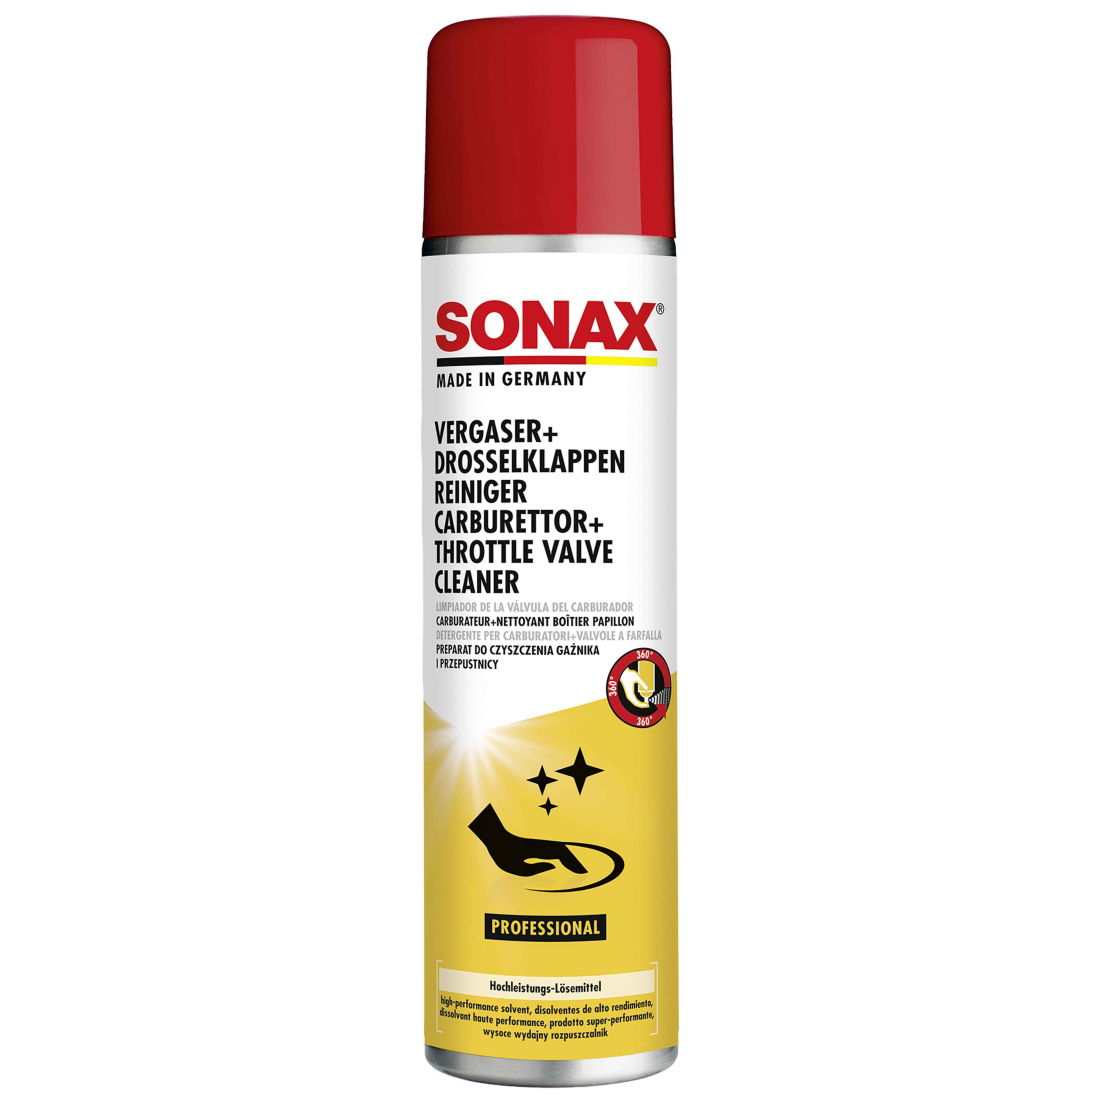 SONAX Vergaser + DrosselklappenReiniger 400ml